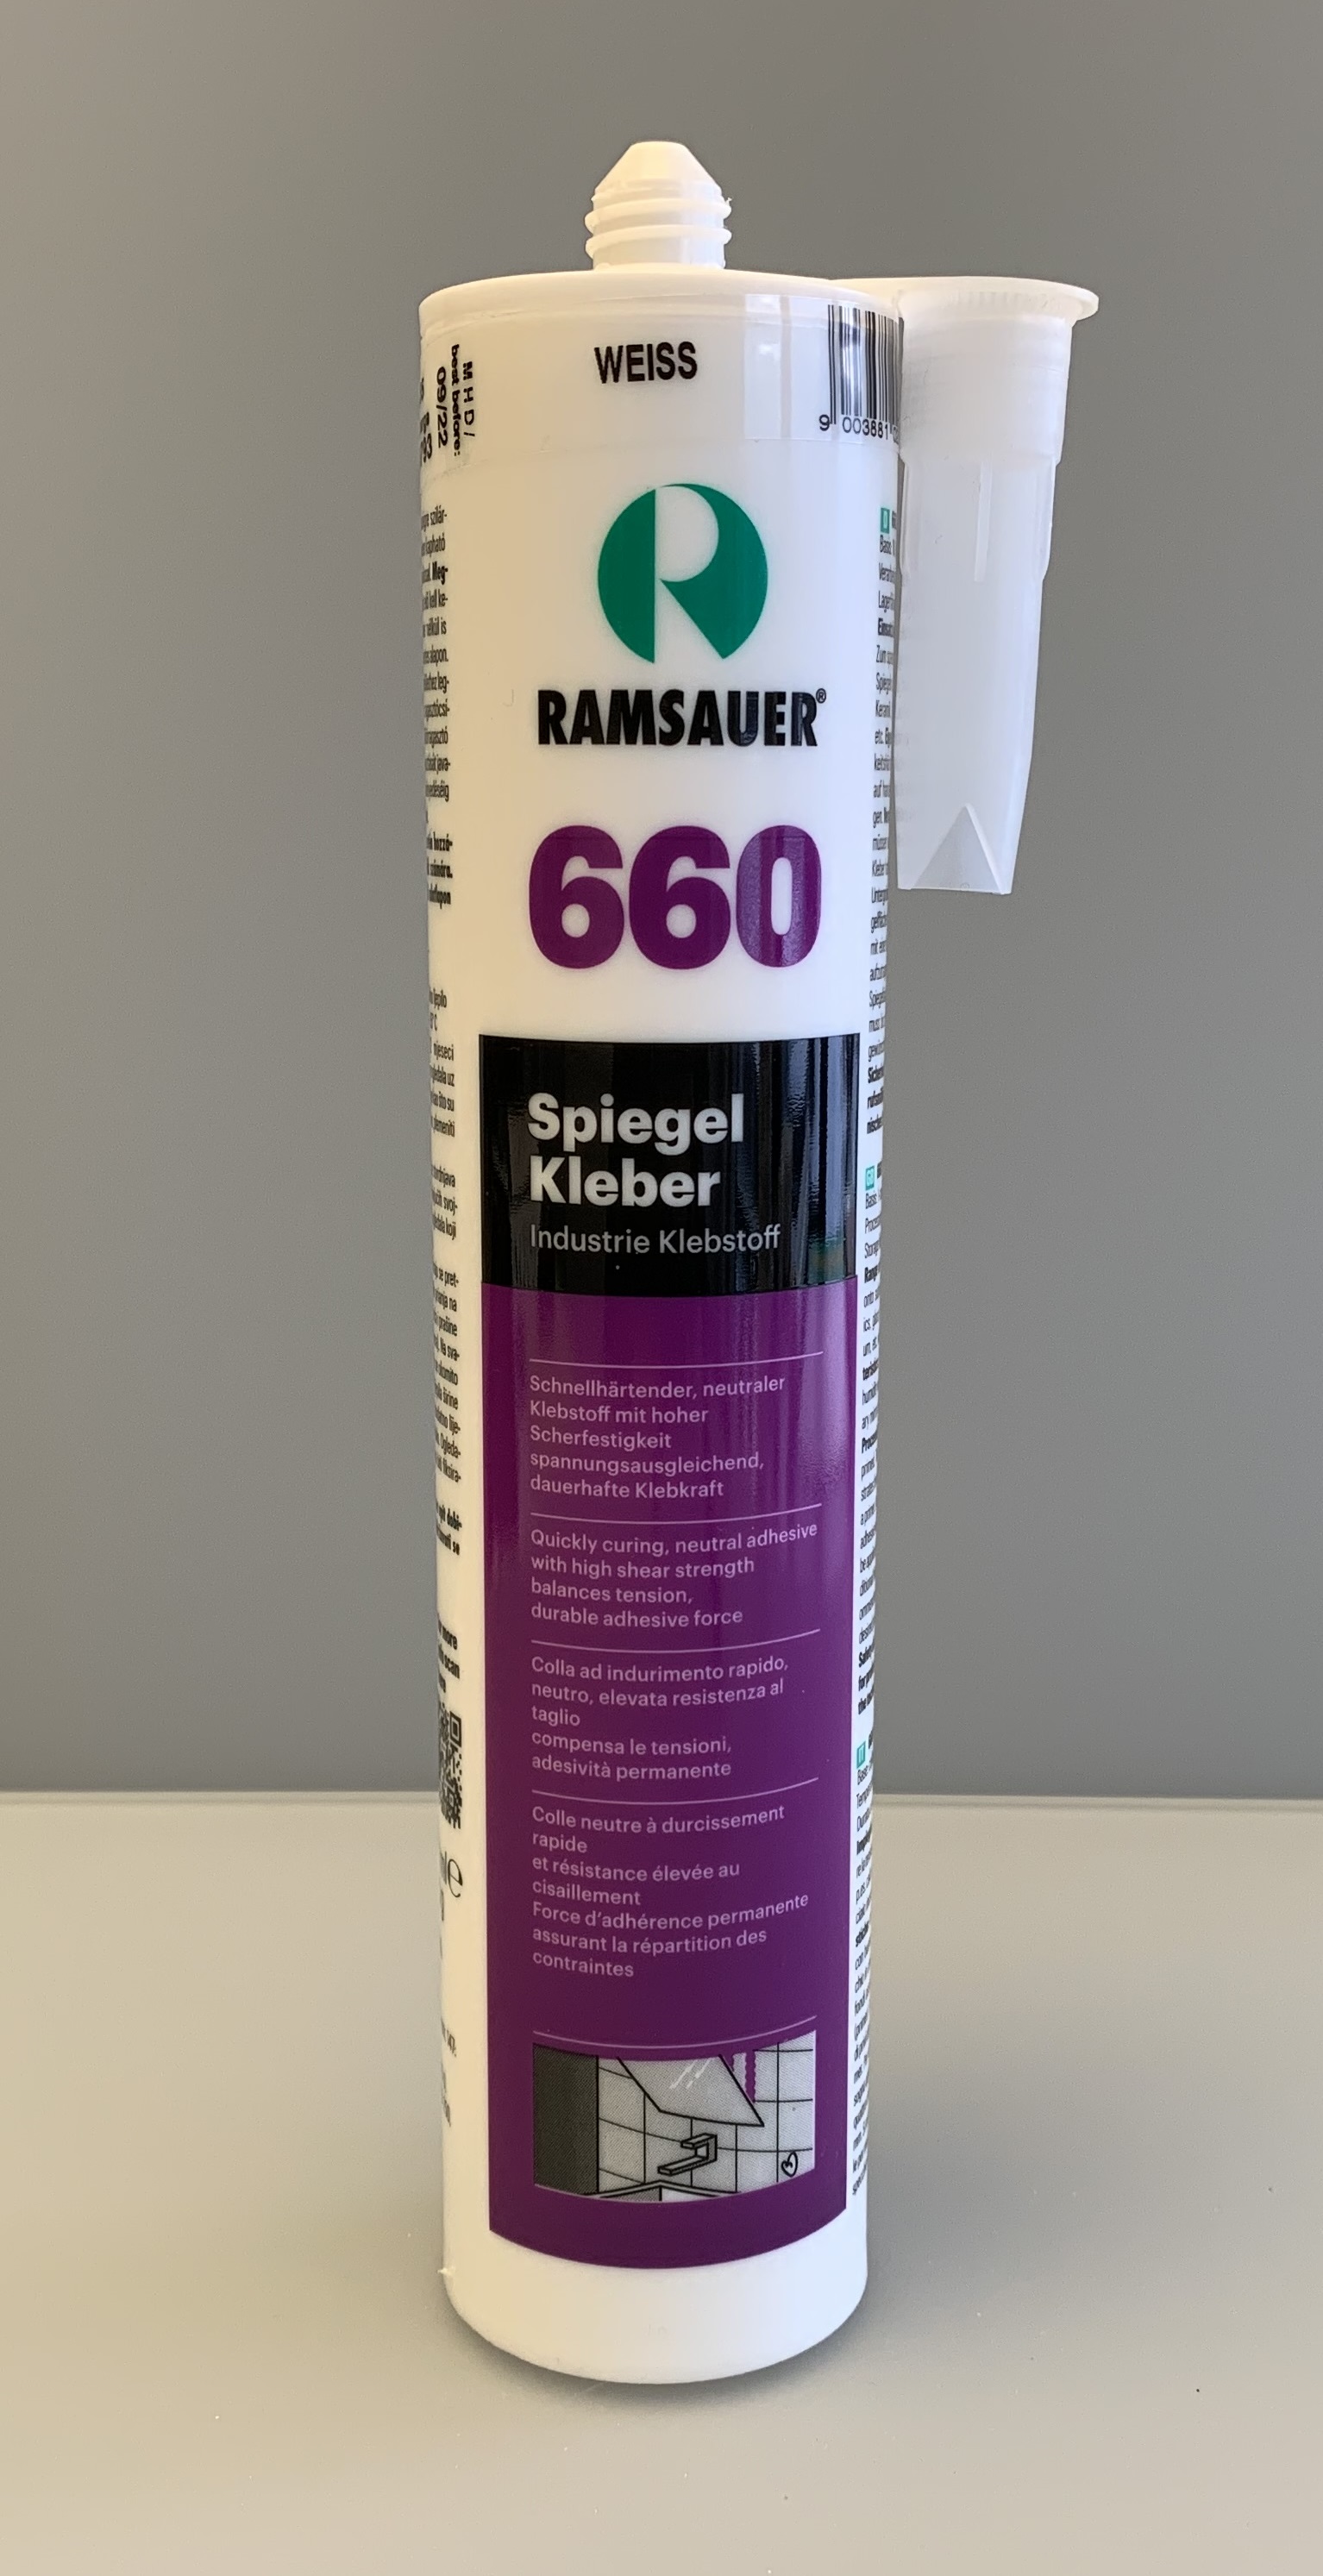 Ramsauer Spiegel Kleber 660